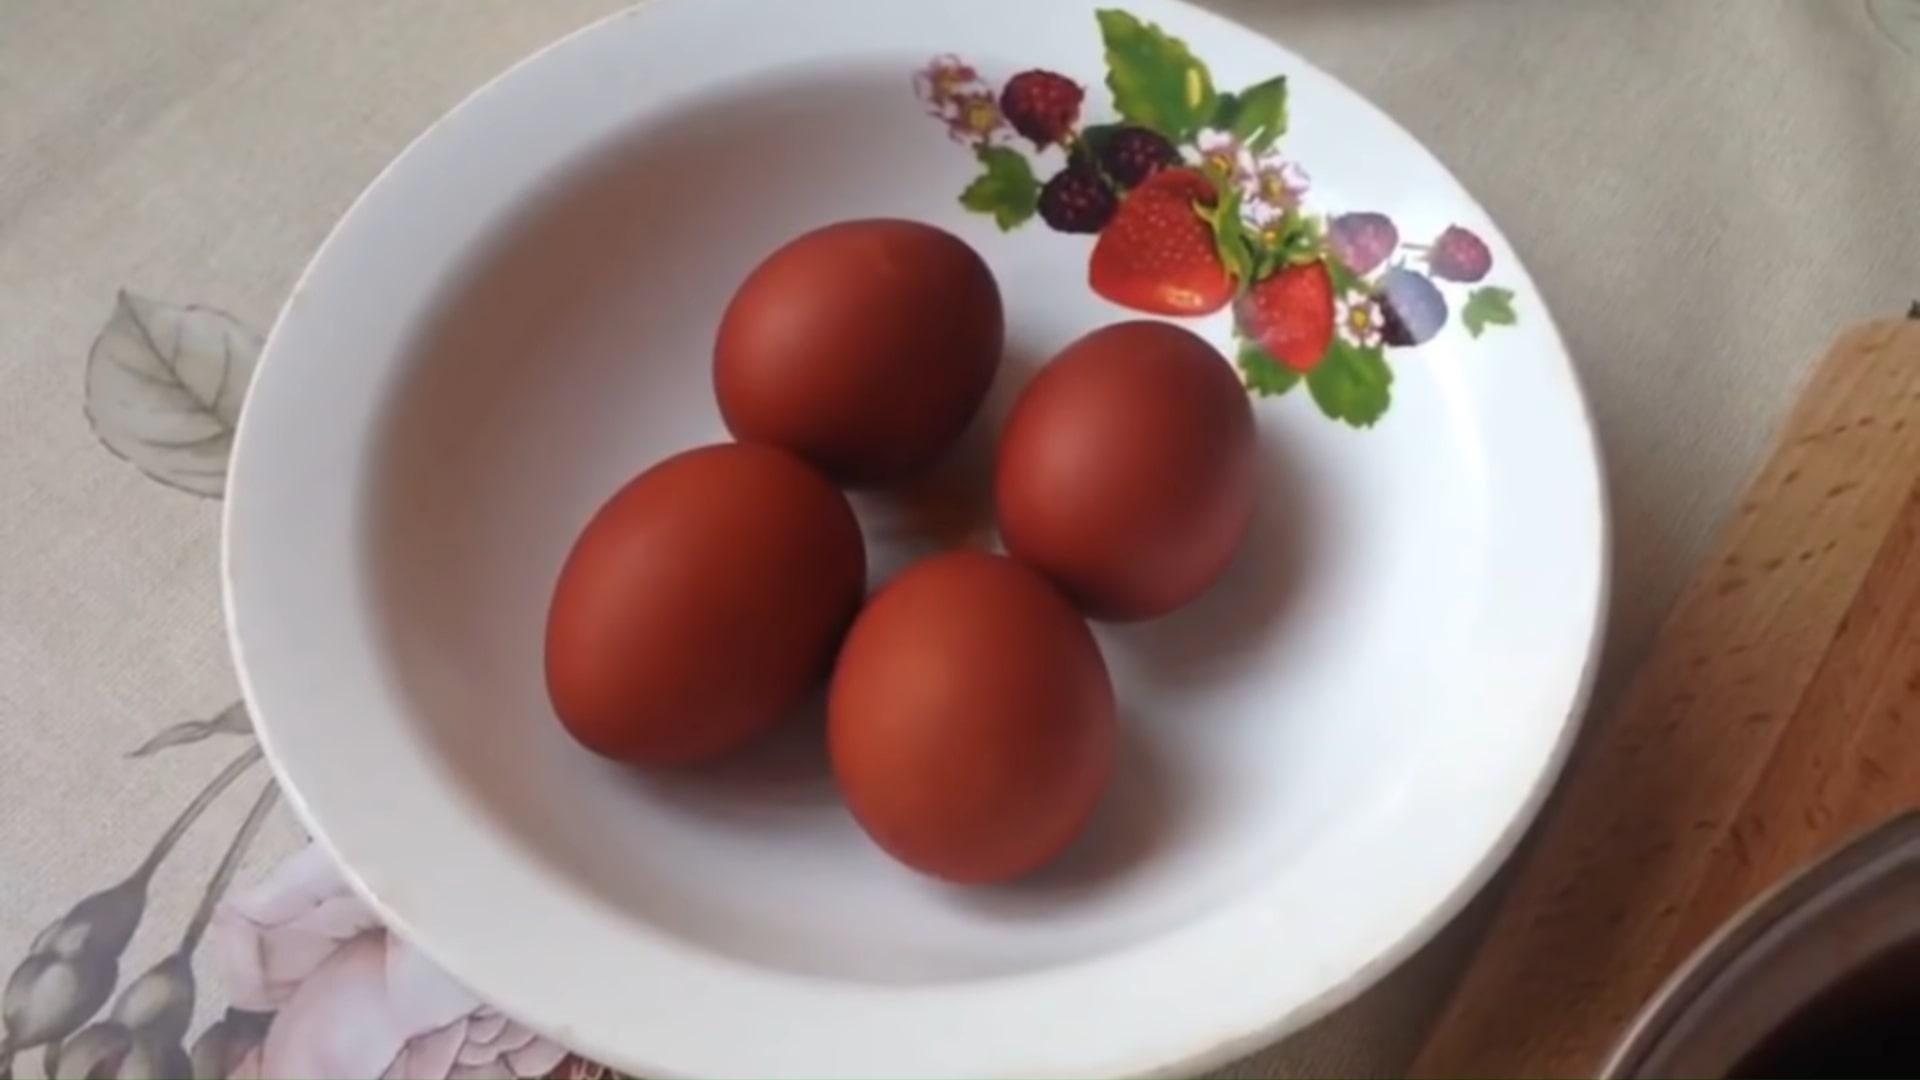 Как покрасить яйца в луковой шелухе - фото